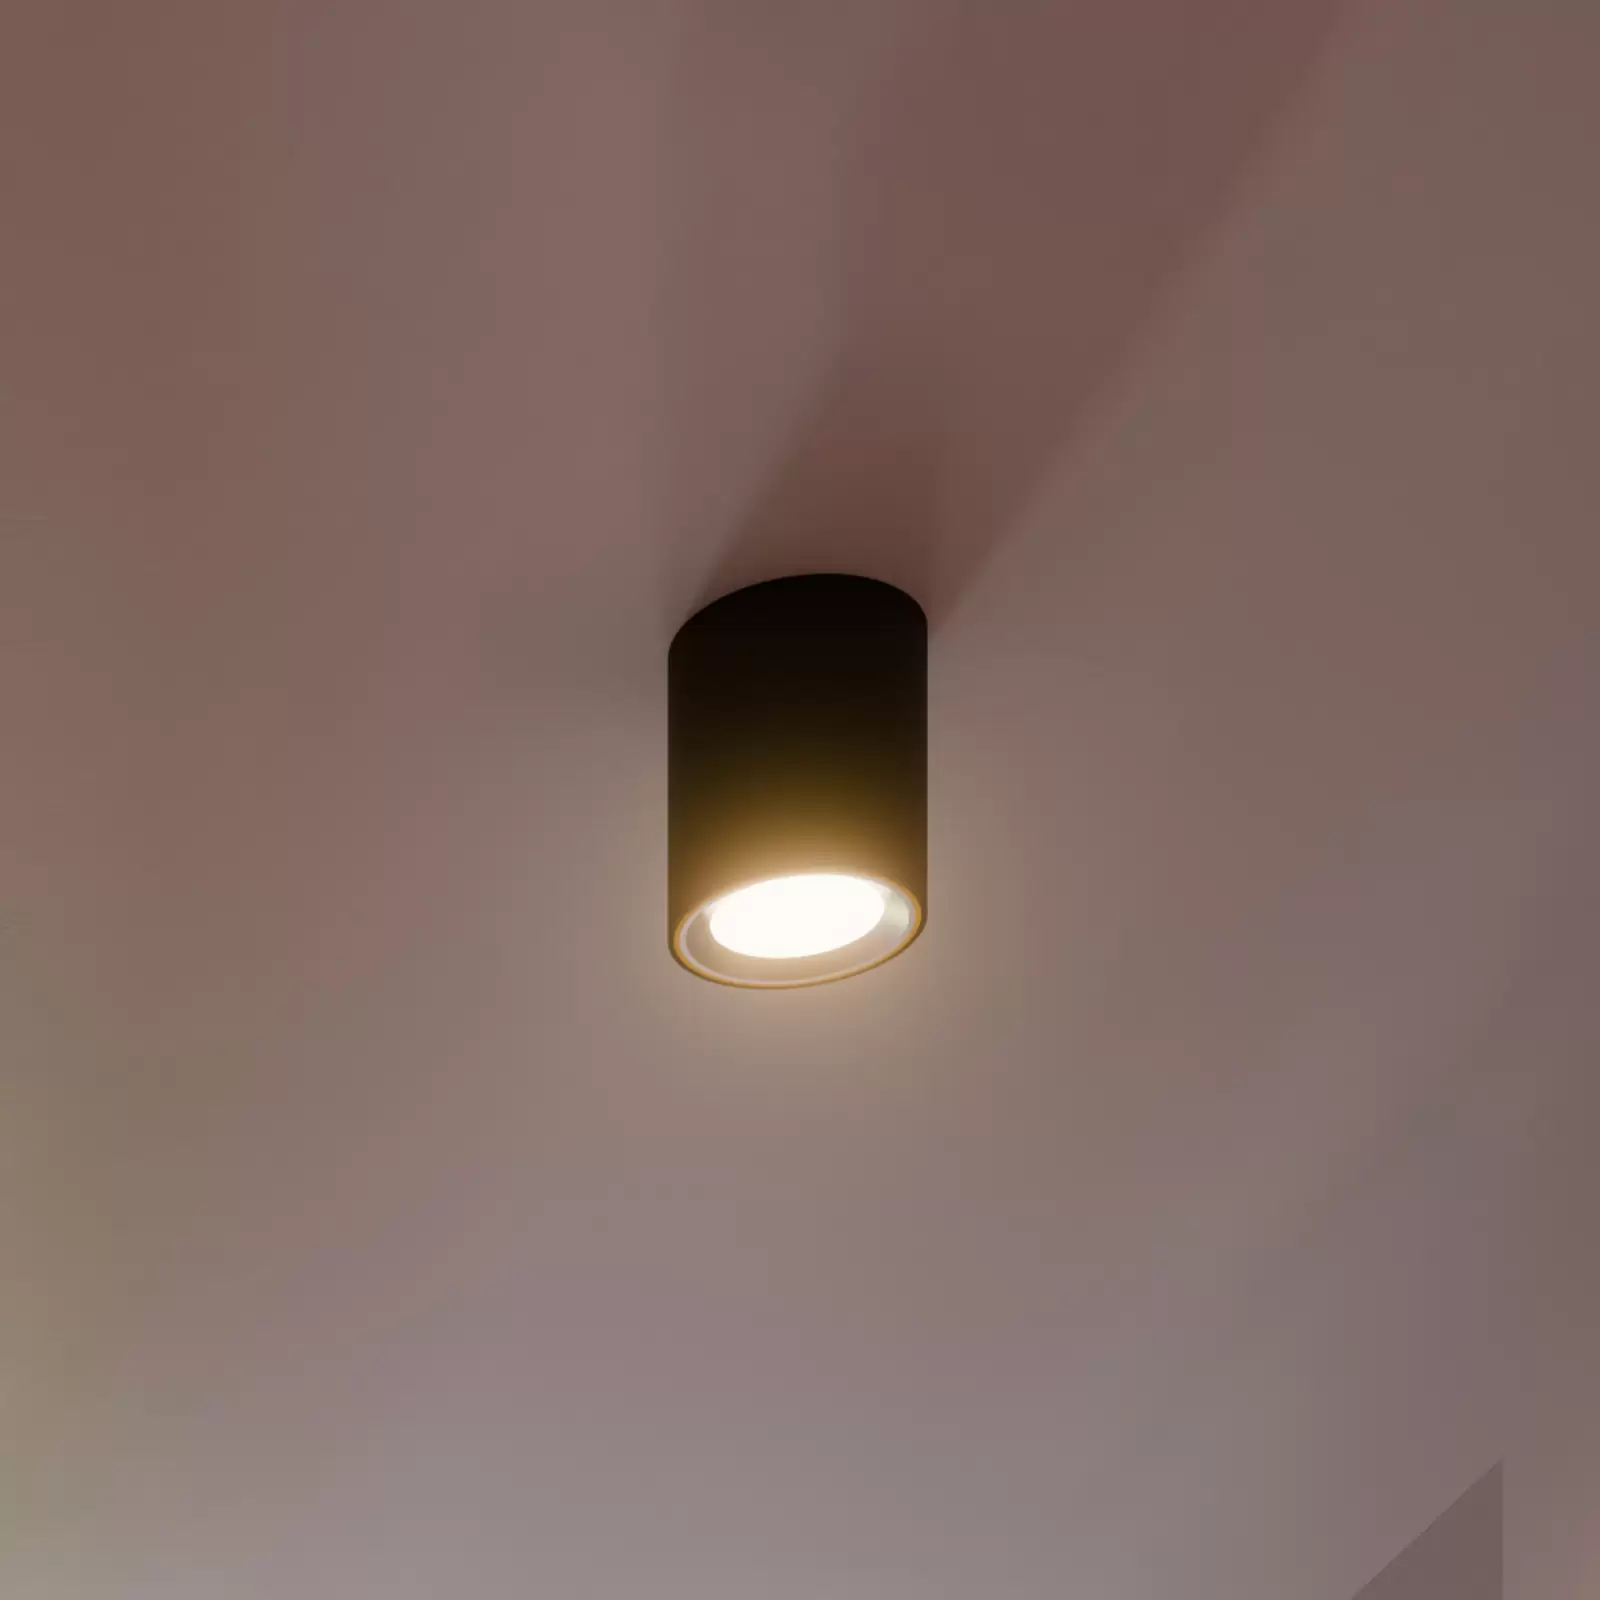 LED-Deckenspot Landon Smart, schwarz, Höhe cm 14